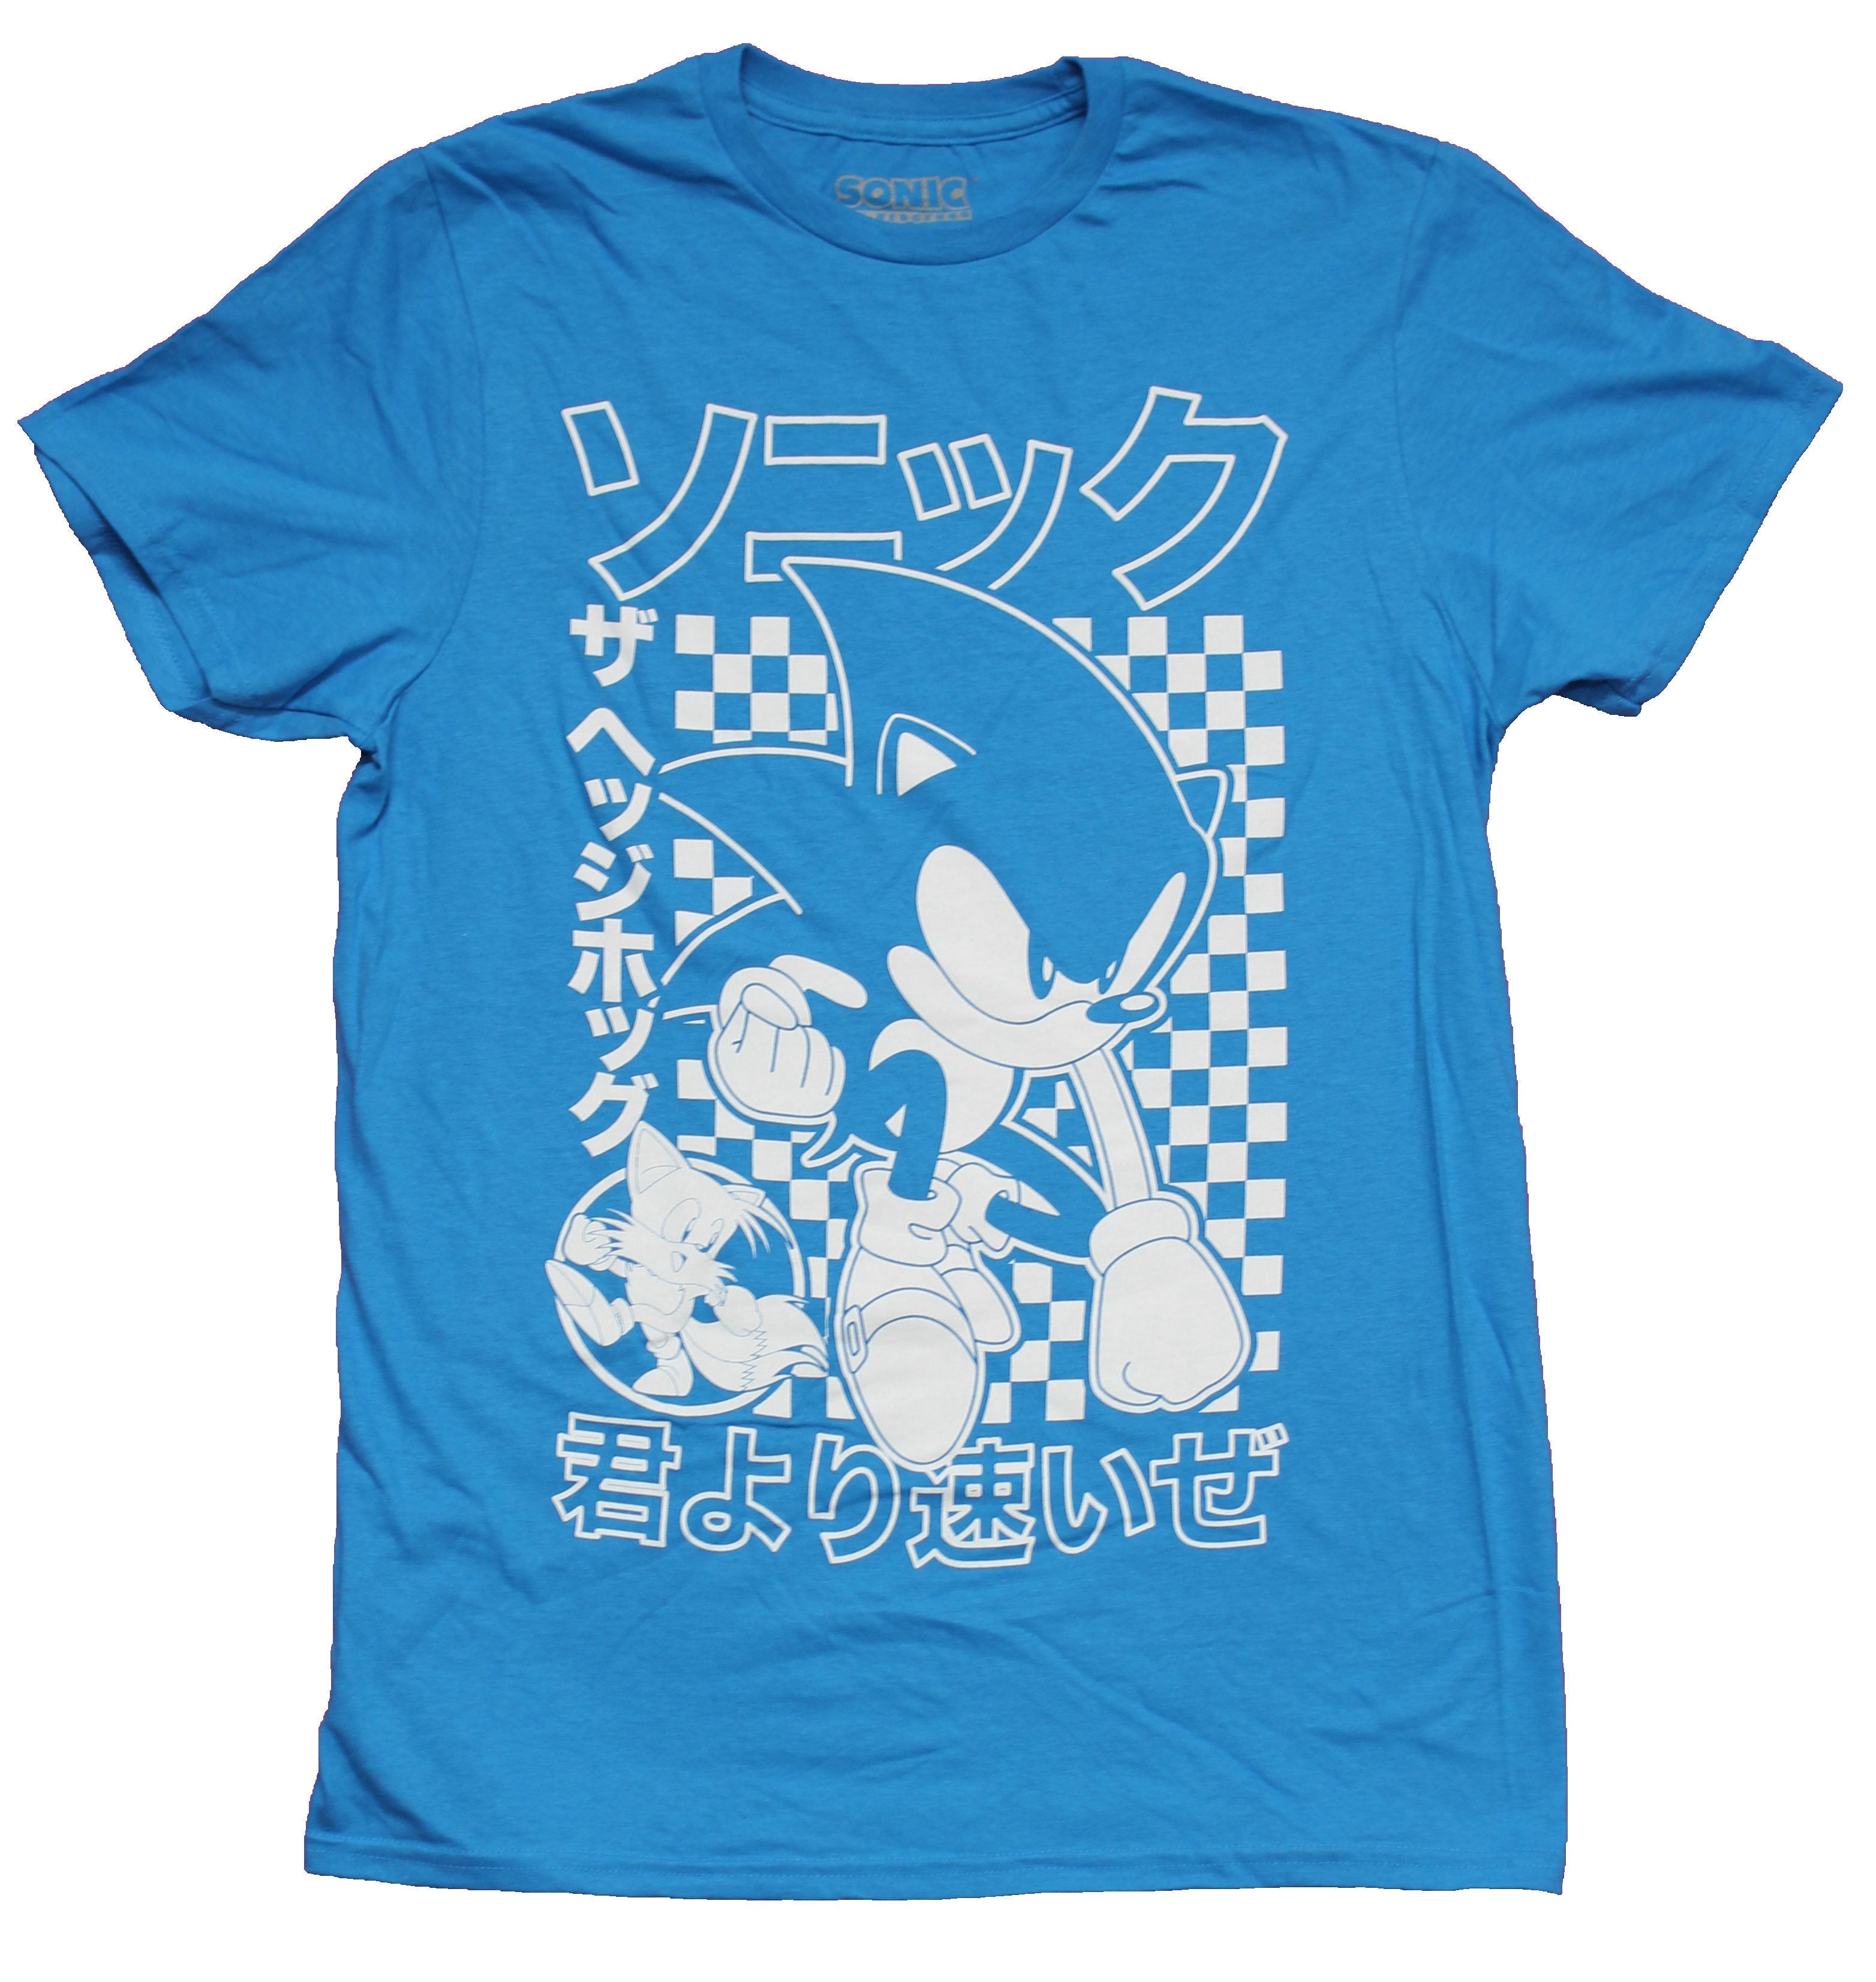 Sonic the Hedgehog Mens T-Shirt - Kanji Sonic Outline Art